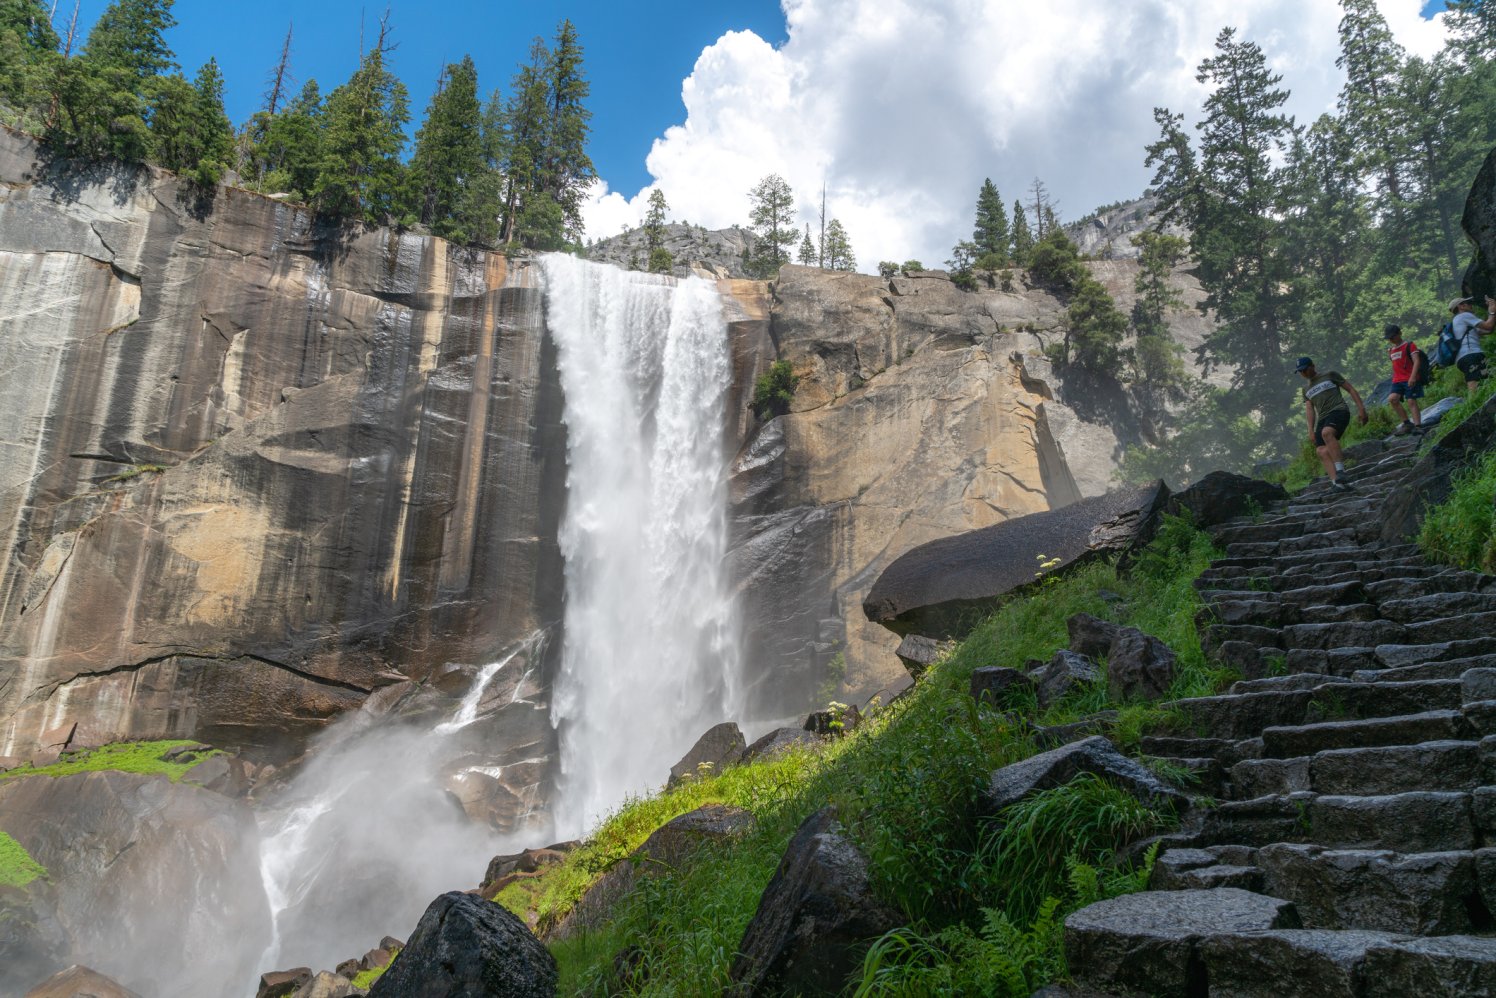 Lets Look Back At Yosemites Ethereal Waterfalls Nbc Los Angeles